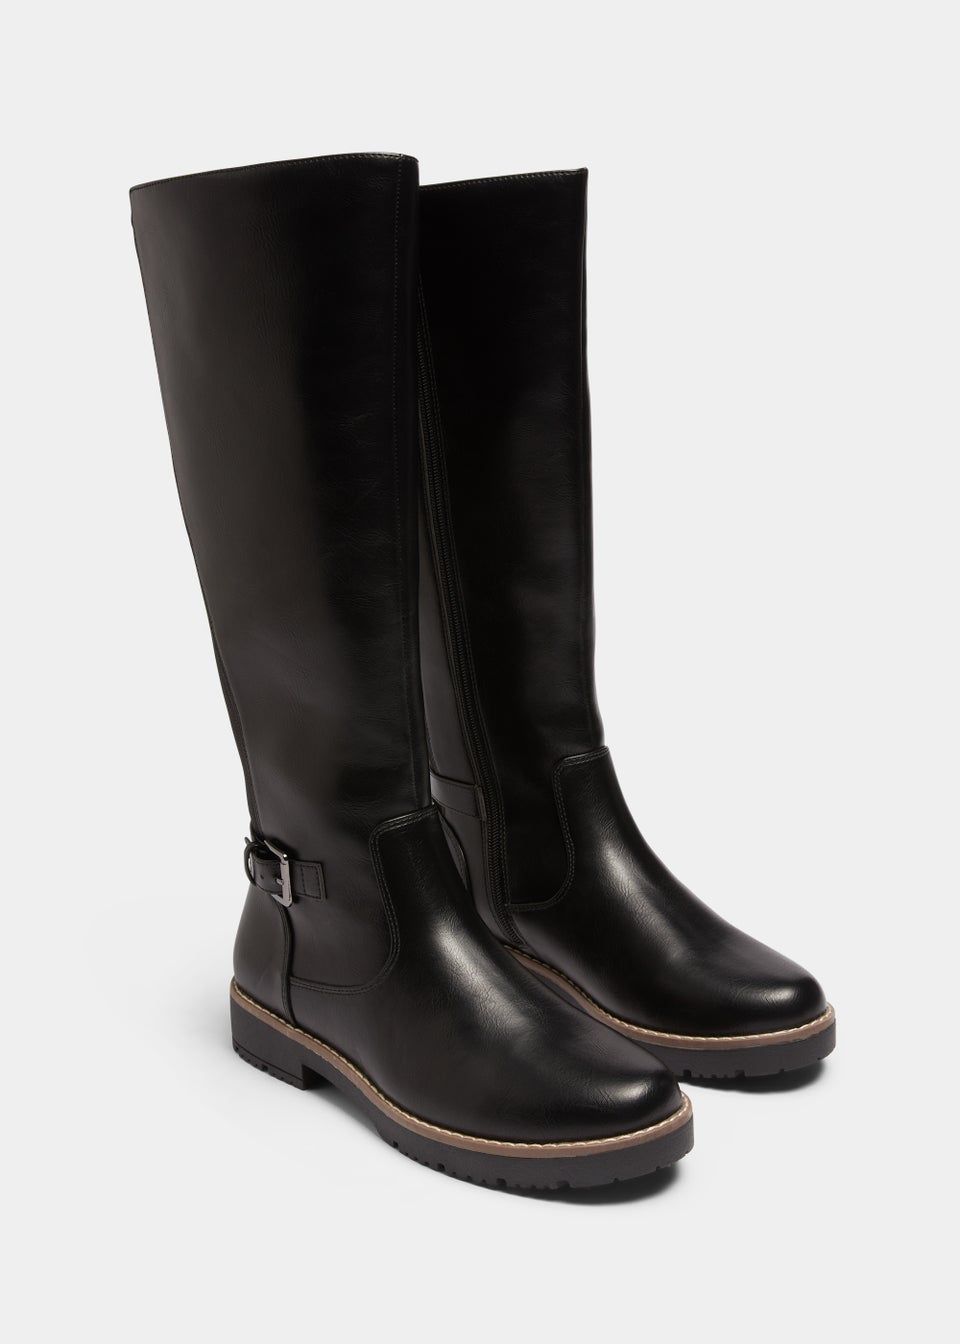 Soleflex Black Knee High Boots | Matalan (UK)